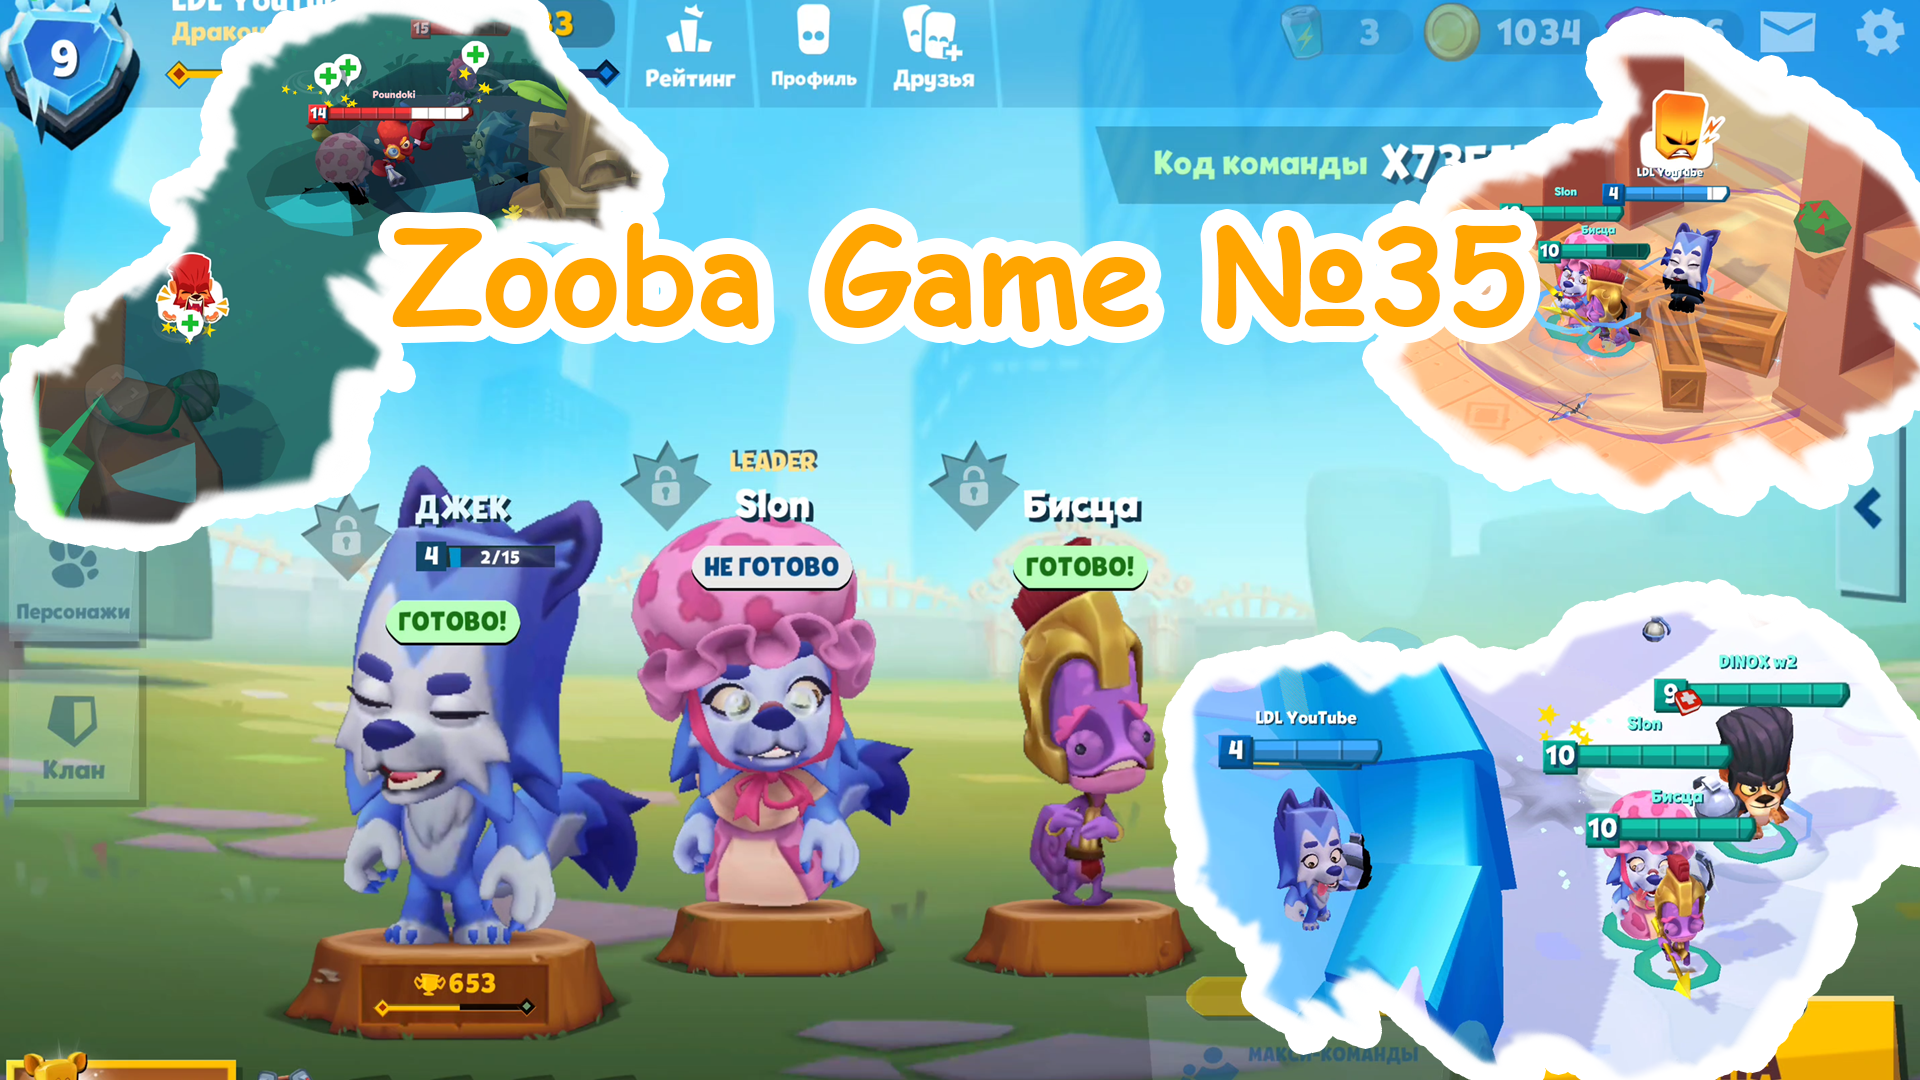 Zooba Game #35 #zooba